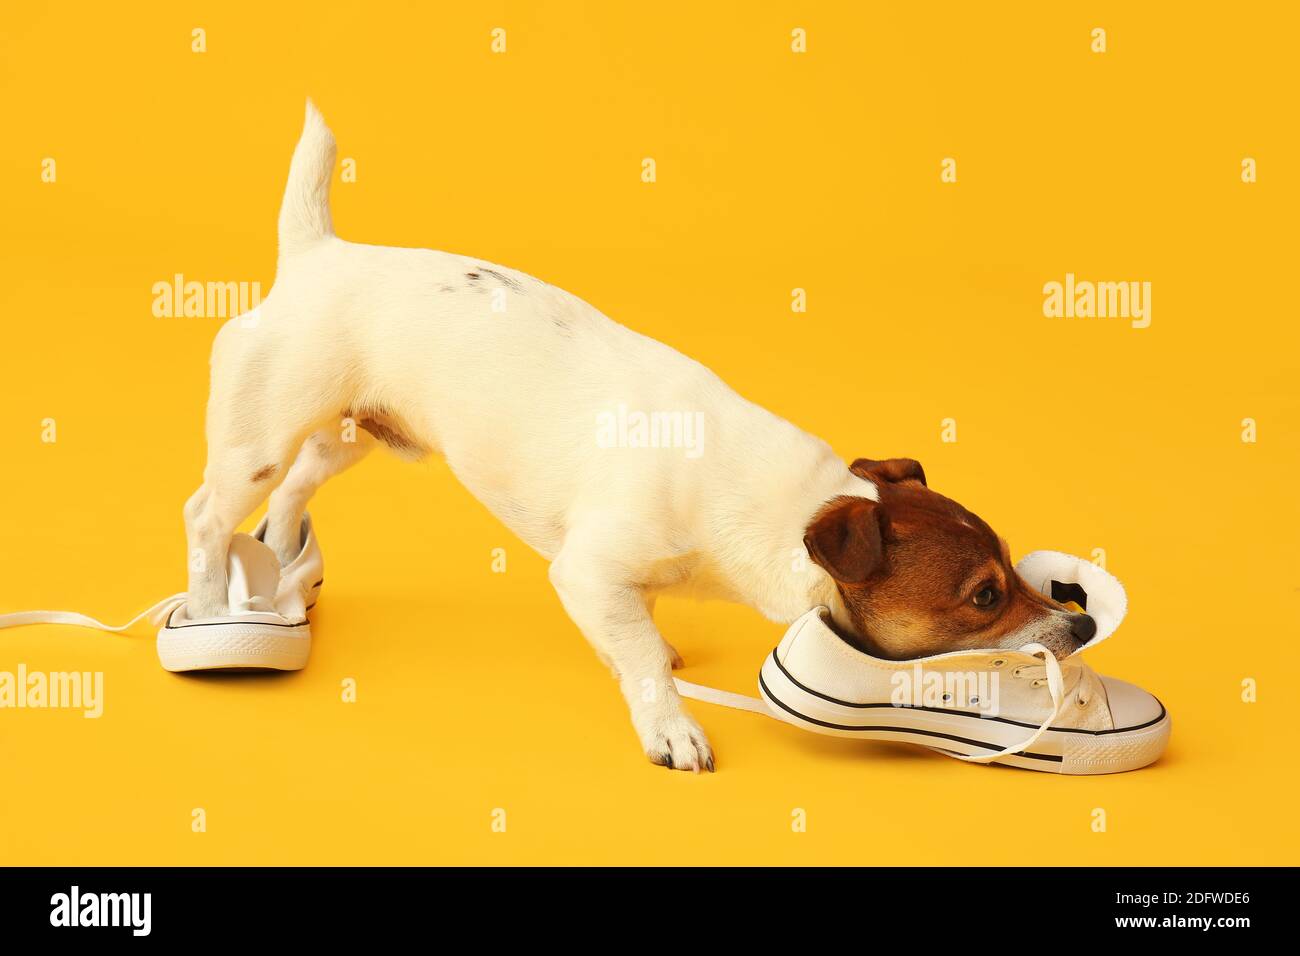 Lustige freche Hund spielt mit Schuhen auf Farbe Hintergrund  Stockfotografie - Alamy